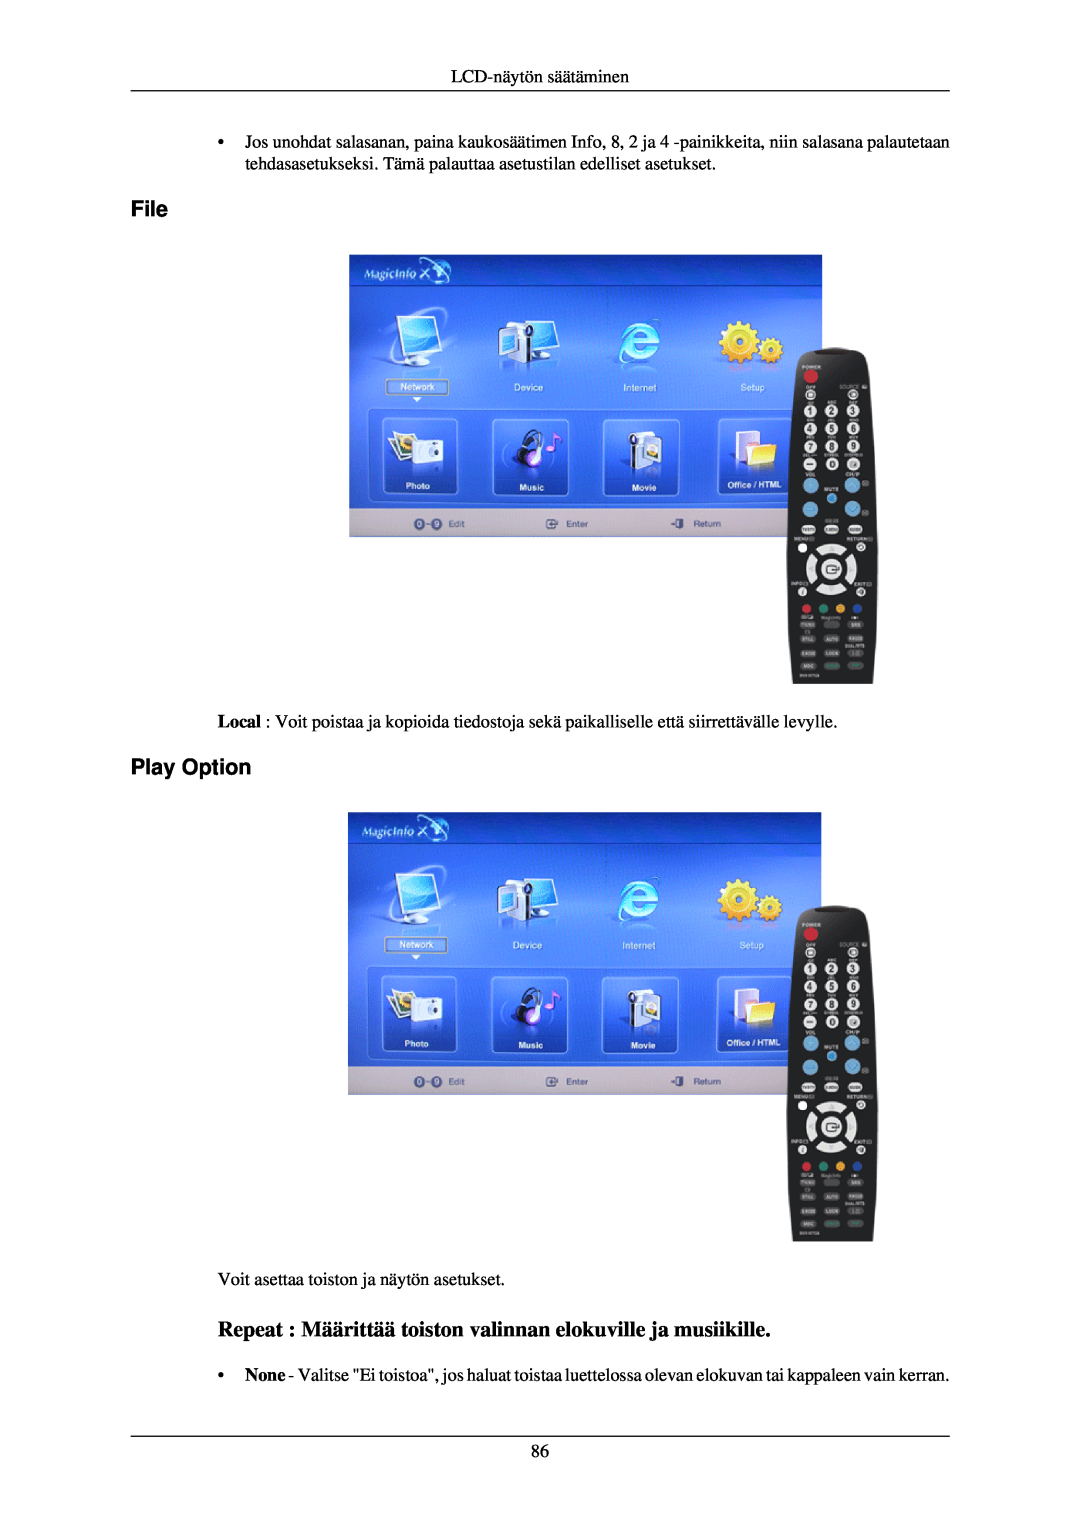 Samsung LH40TCUMBG/EN, LH46TCUMBC/EN manual File, Play Option, Repeat Määrittää toiston valinnan elokuville ja musiikille 